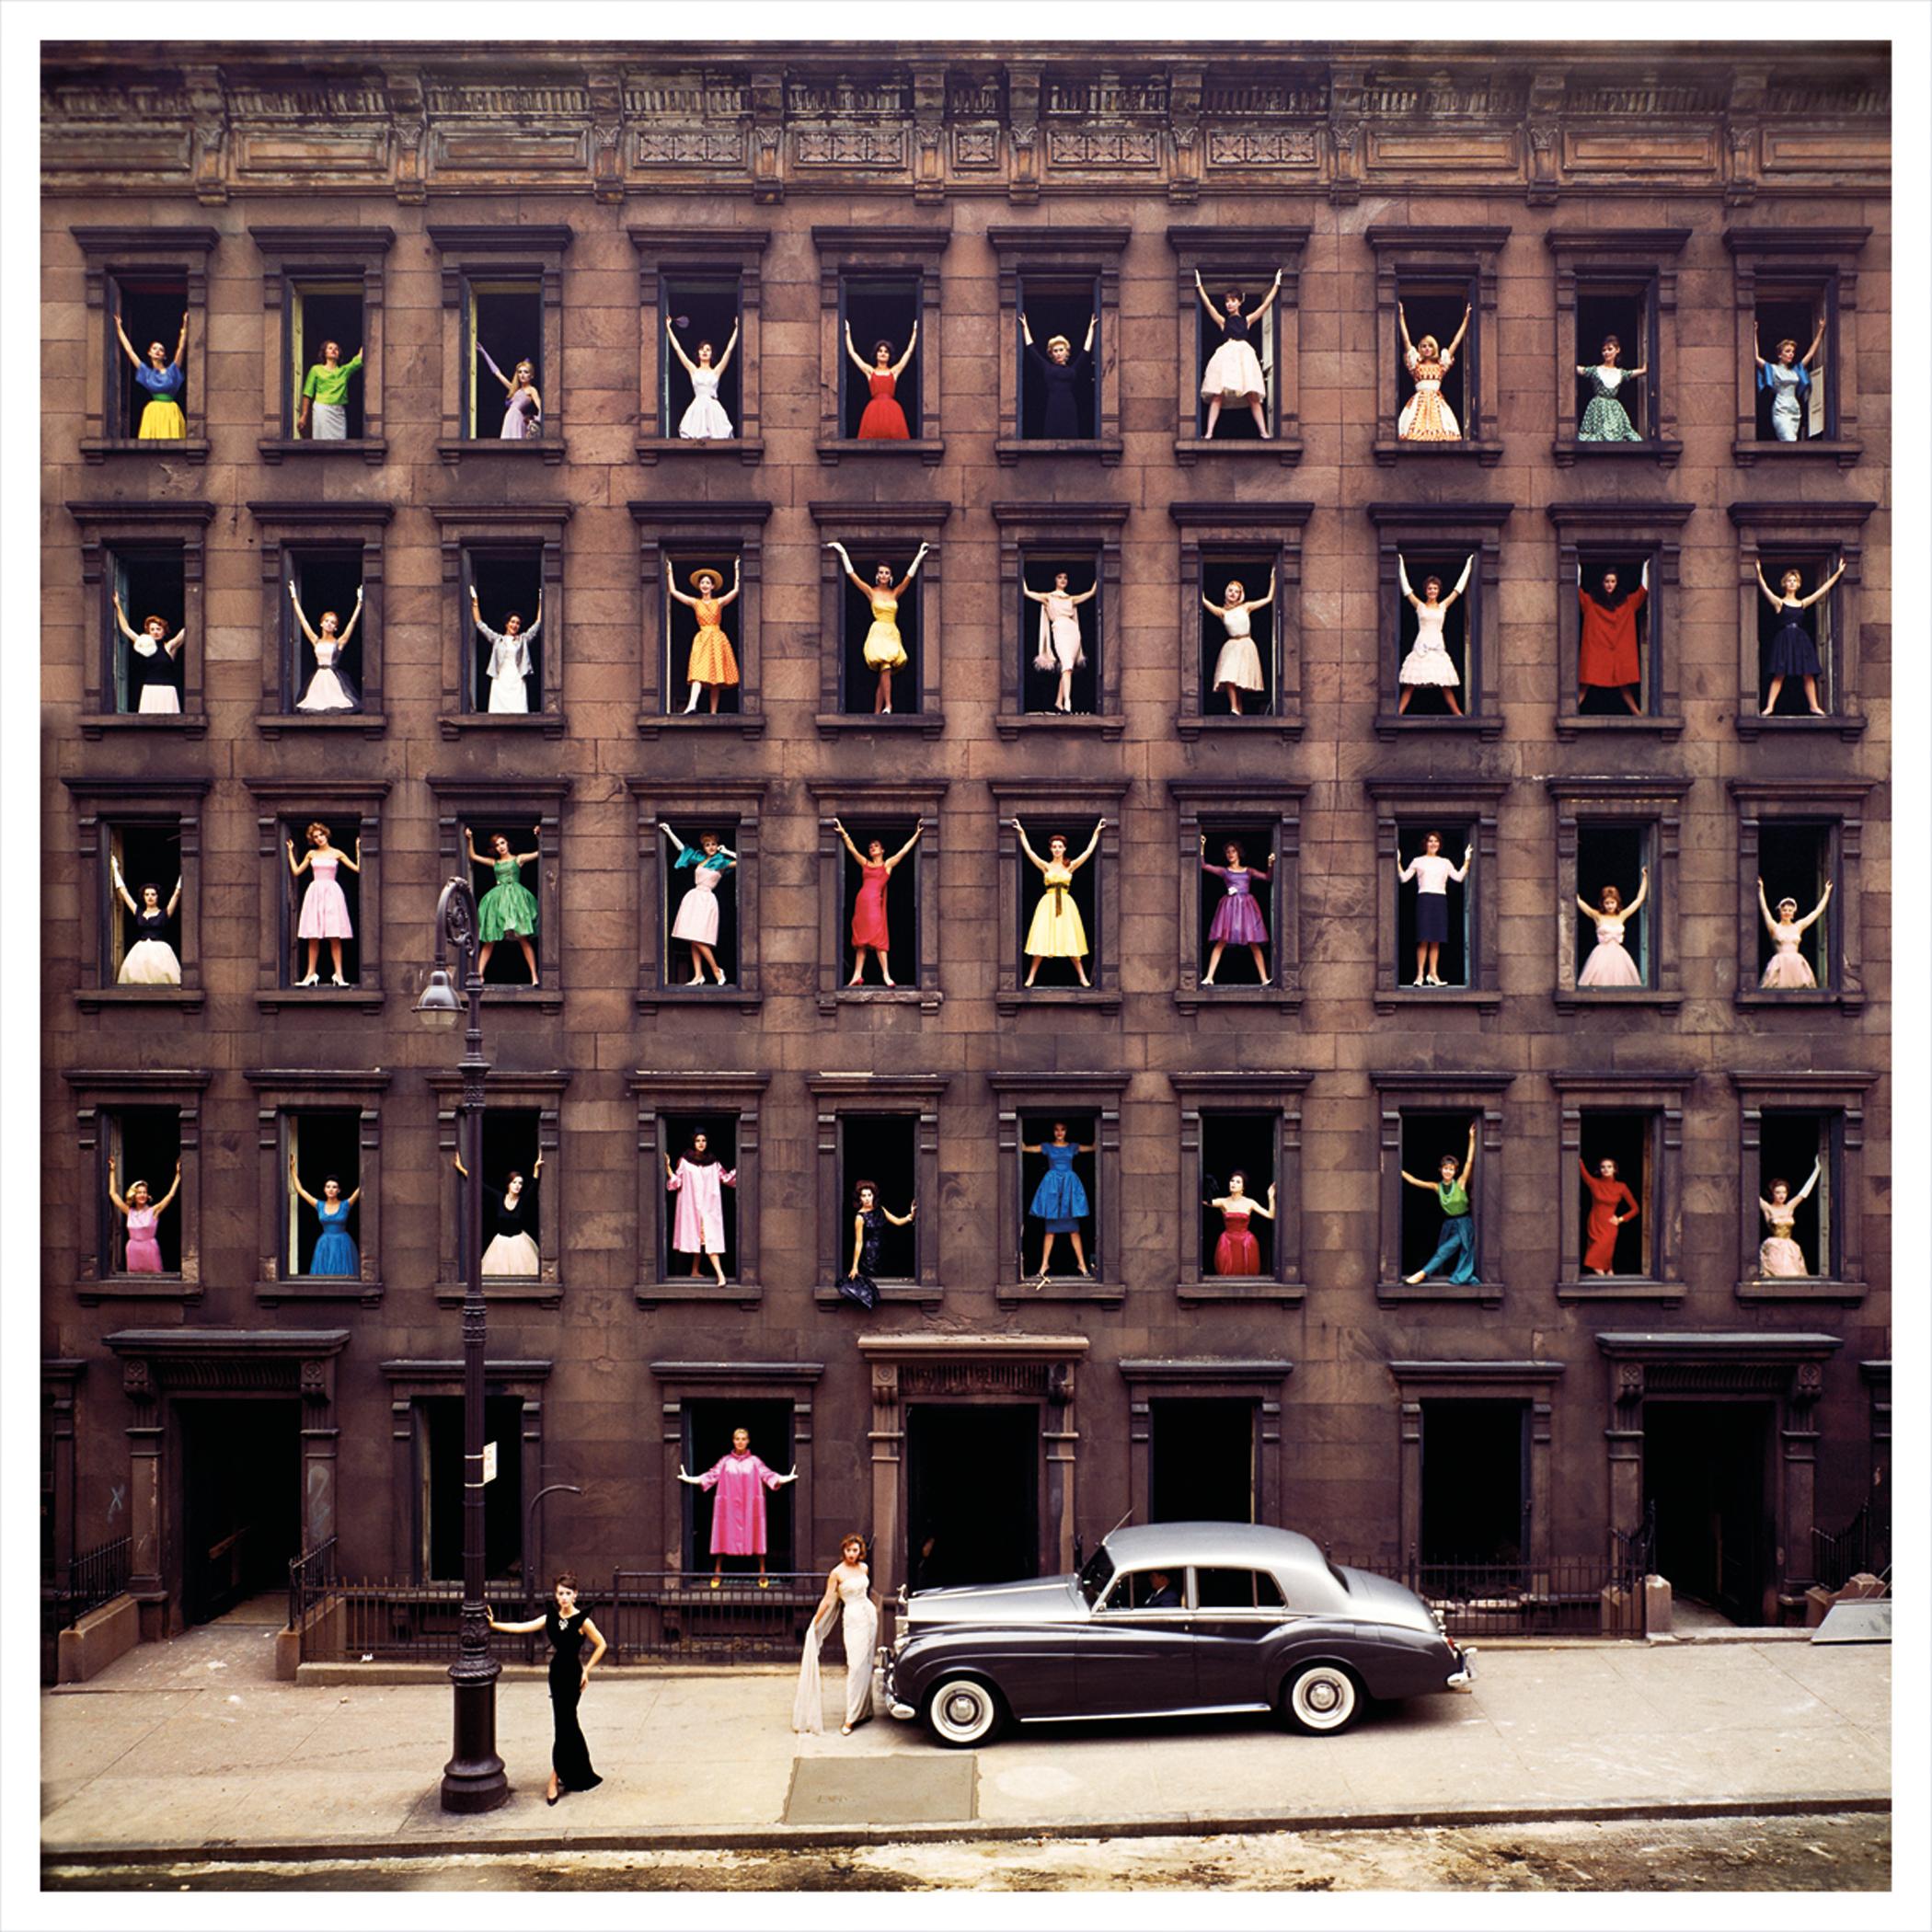 Ormond Gigli
Mädchen im Fenster, 1960 (später gedruckt)
Farbiger Kupplungsdruck
37 x 37 Zoll
Auflage von 45
Signiert, nummeriert und datiert vom Künstler
ungerahmt

Ormond Gigli: Der Visionär hinter den "Girls in the Windows"

Ormond Gigli ist ein